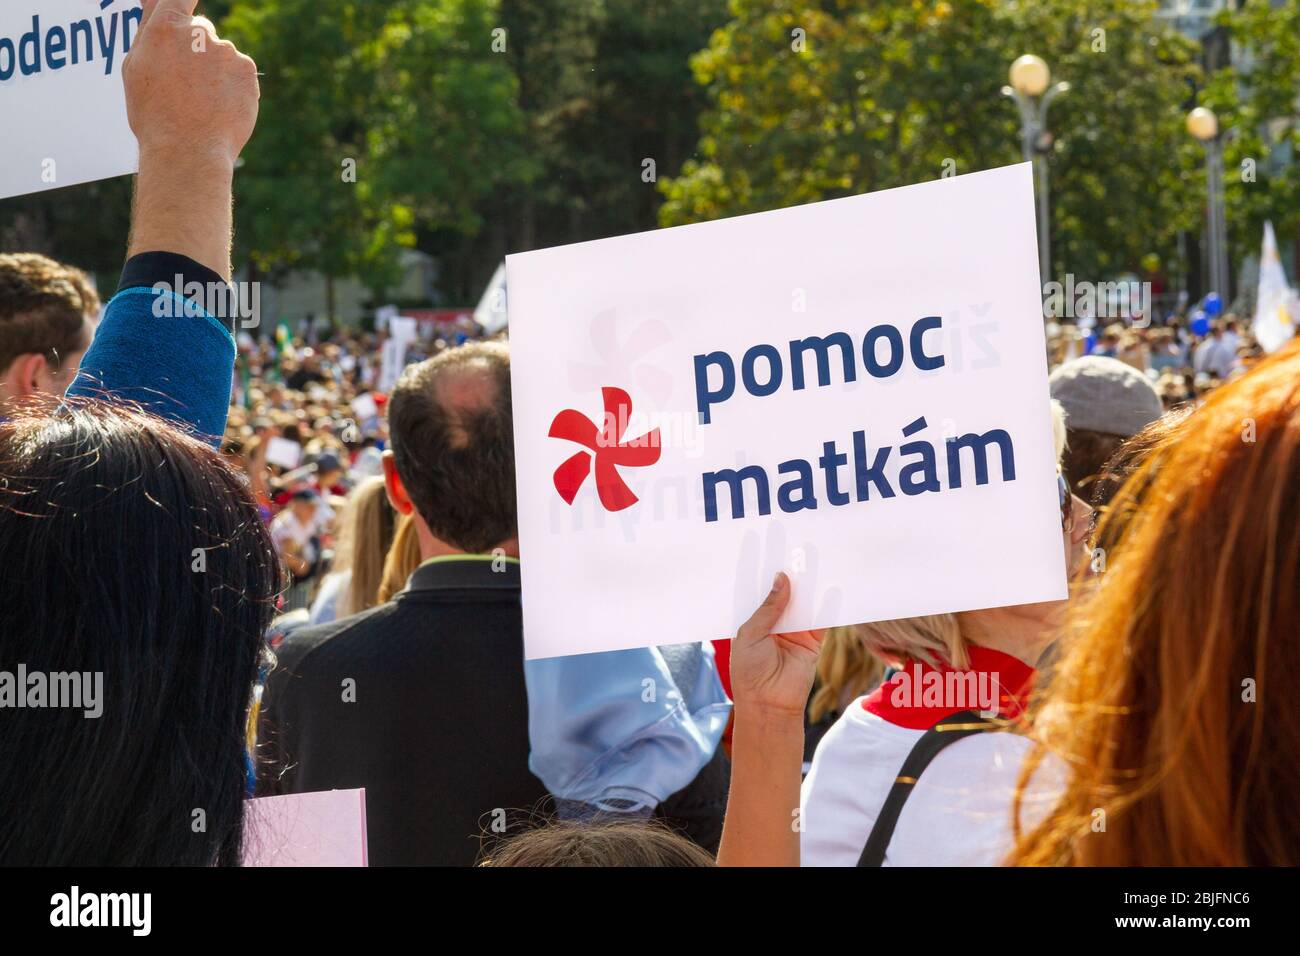 Bratislava, Eslovaquia. 2019/9/22. Un cartel con las palabras "pomoc matkam" (que significa "ayuda para las madres" en eslovaco) durante una marcha por la vida. Foto de stock